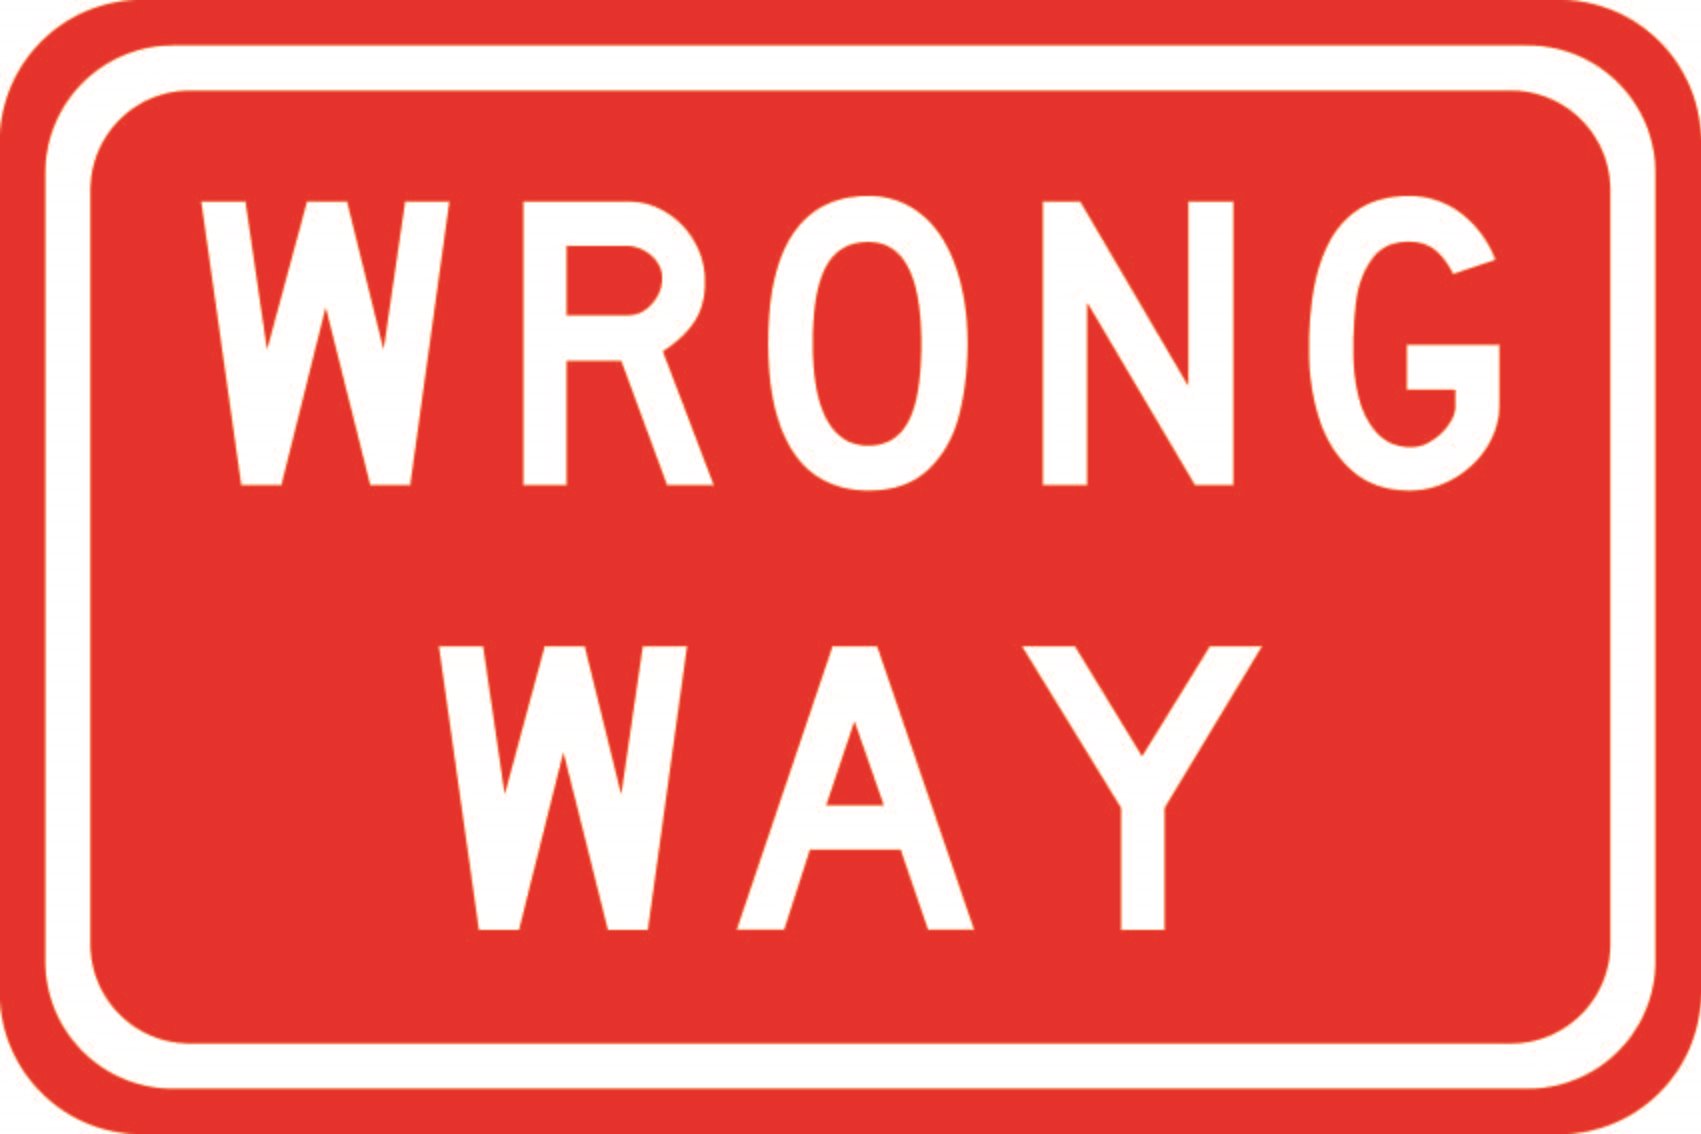 Wrong Way - 600 x 400